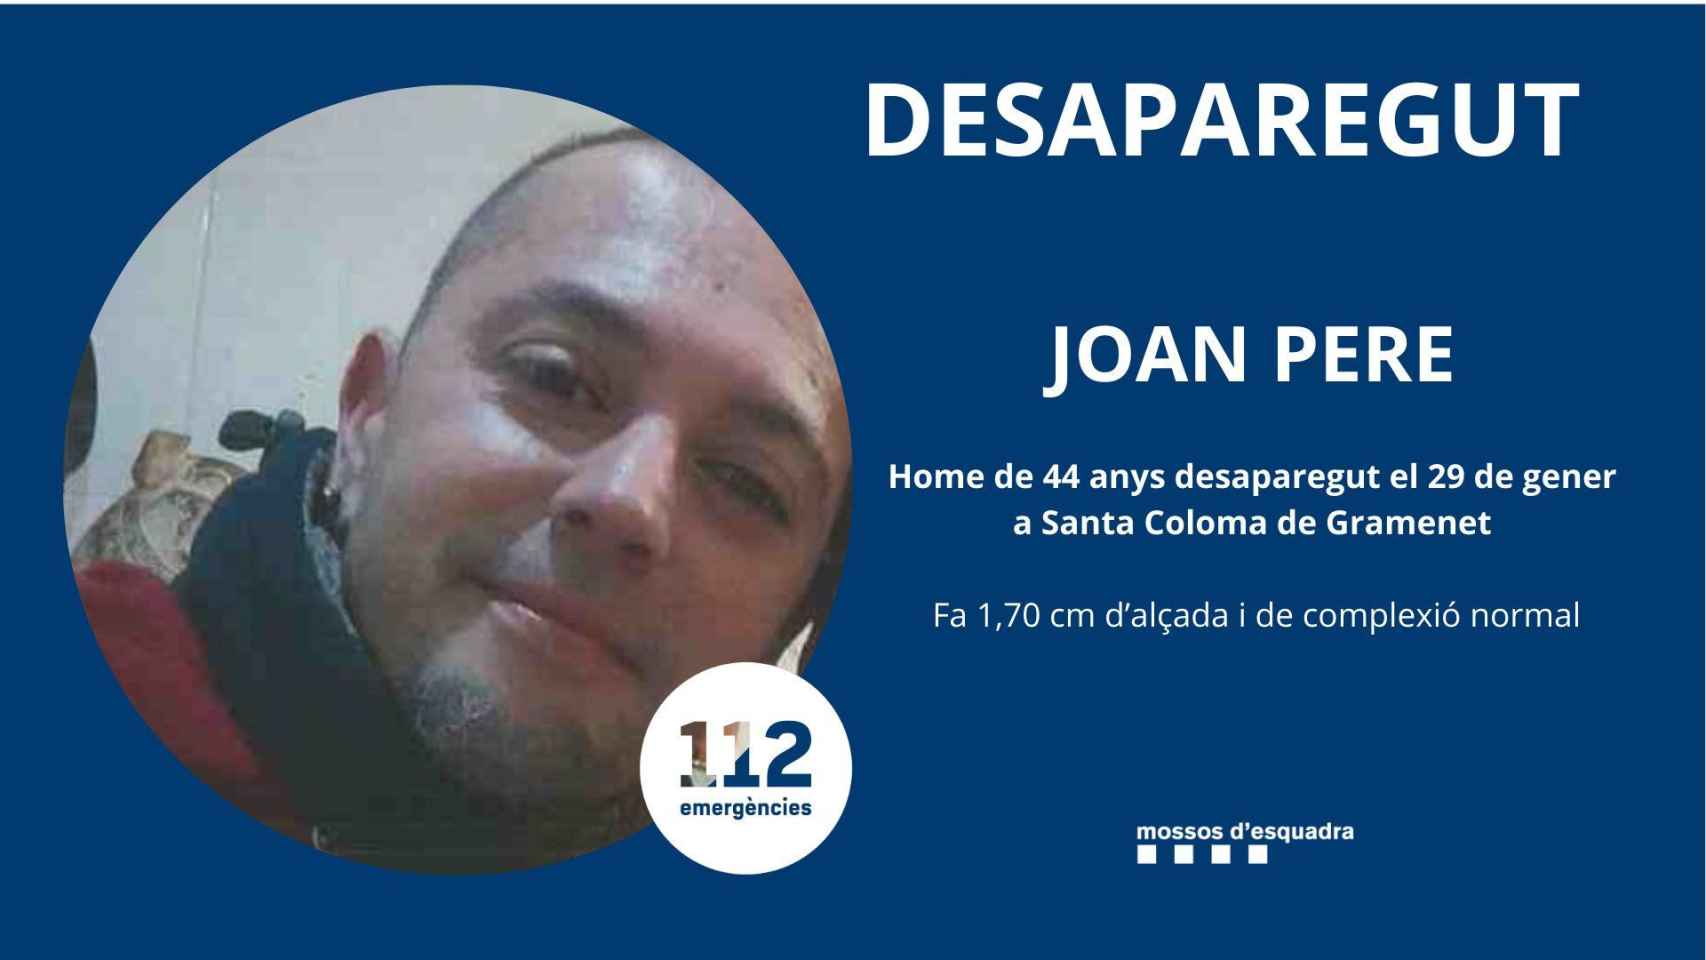 Joan Pere, desaparecido el día 29 en Badalona